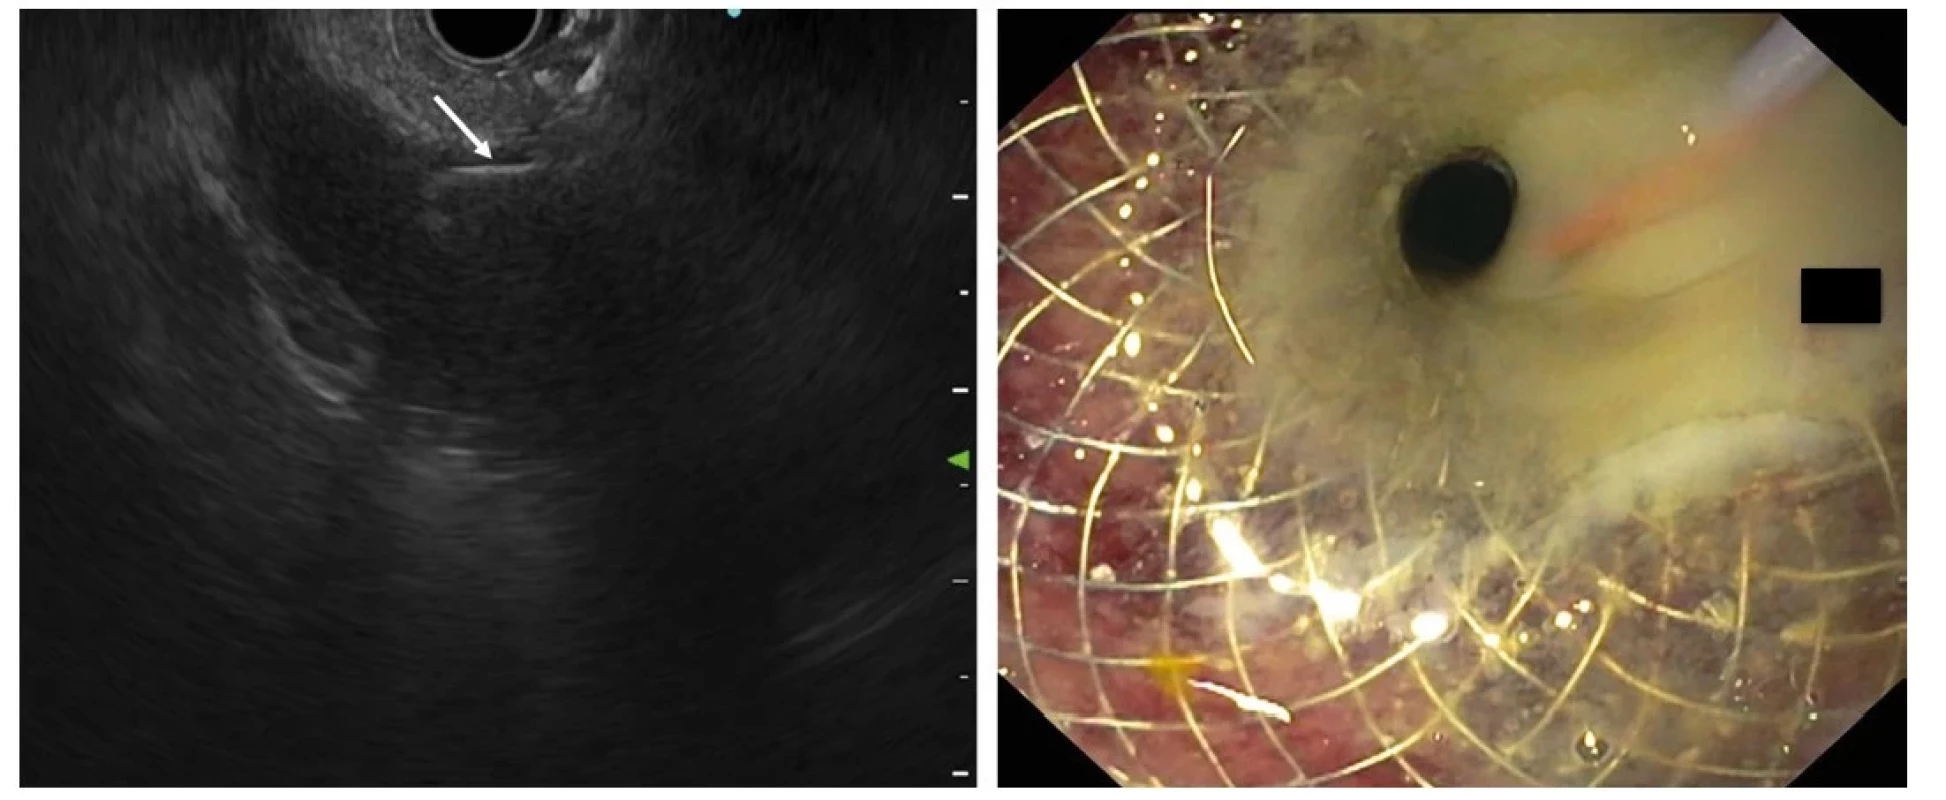 Endoskopická cholecystoduodenostomie – vlevo endosonografický obraz akutní kalkulózní cholecystitidy s pericholecystitidou a empyémem,
patrný transduodenálně zavedený lumen apoziční stent (část ve žlučníku označena bílou šipkou), vpravo je duodenální část stentu se zavedeným vodičem
a vytékajícím hnisem